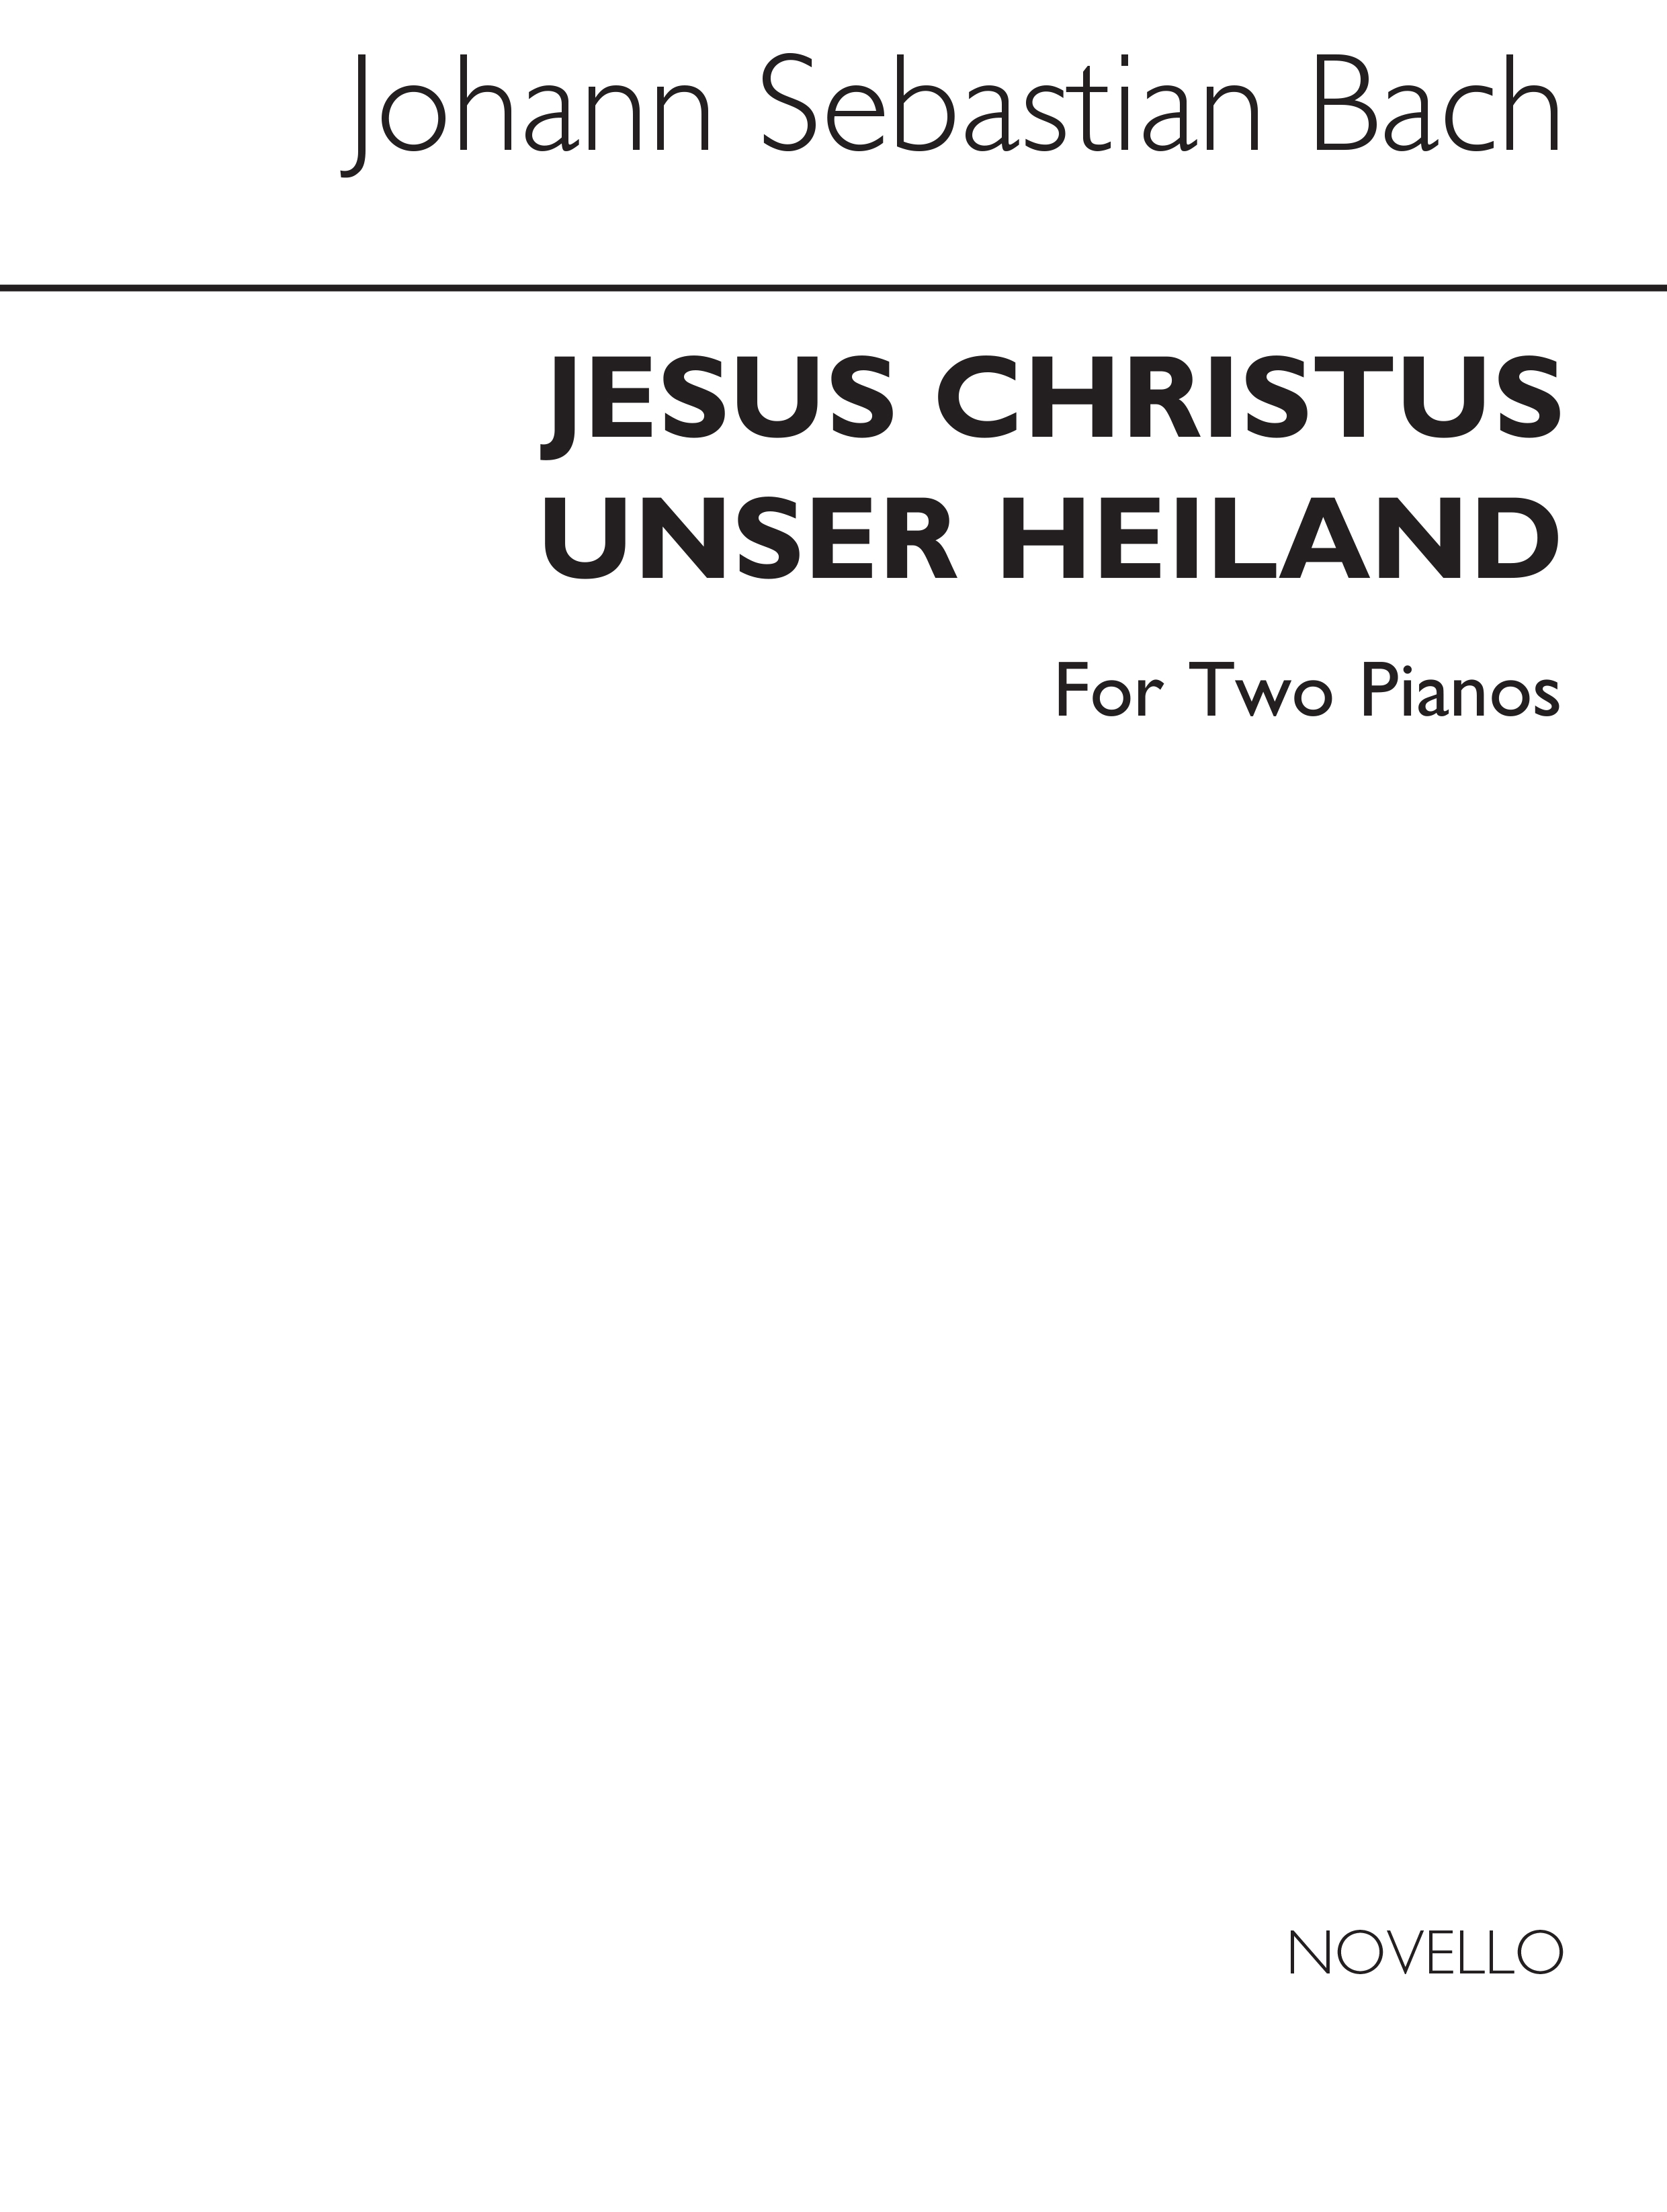 J.S.Bach: Jesus Christus Unser Heiland (Walter Emery)